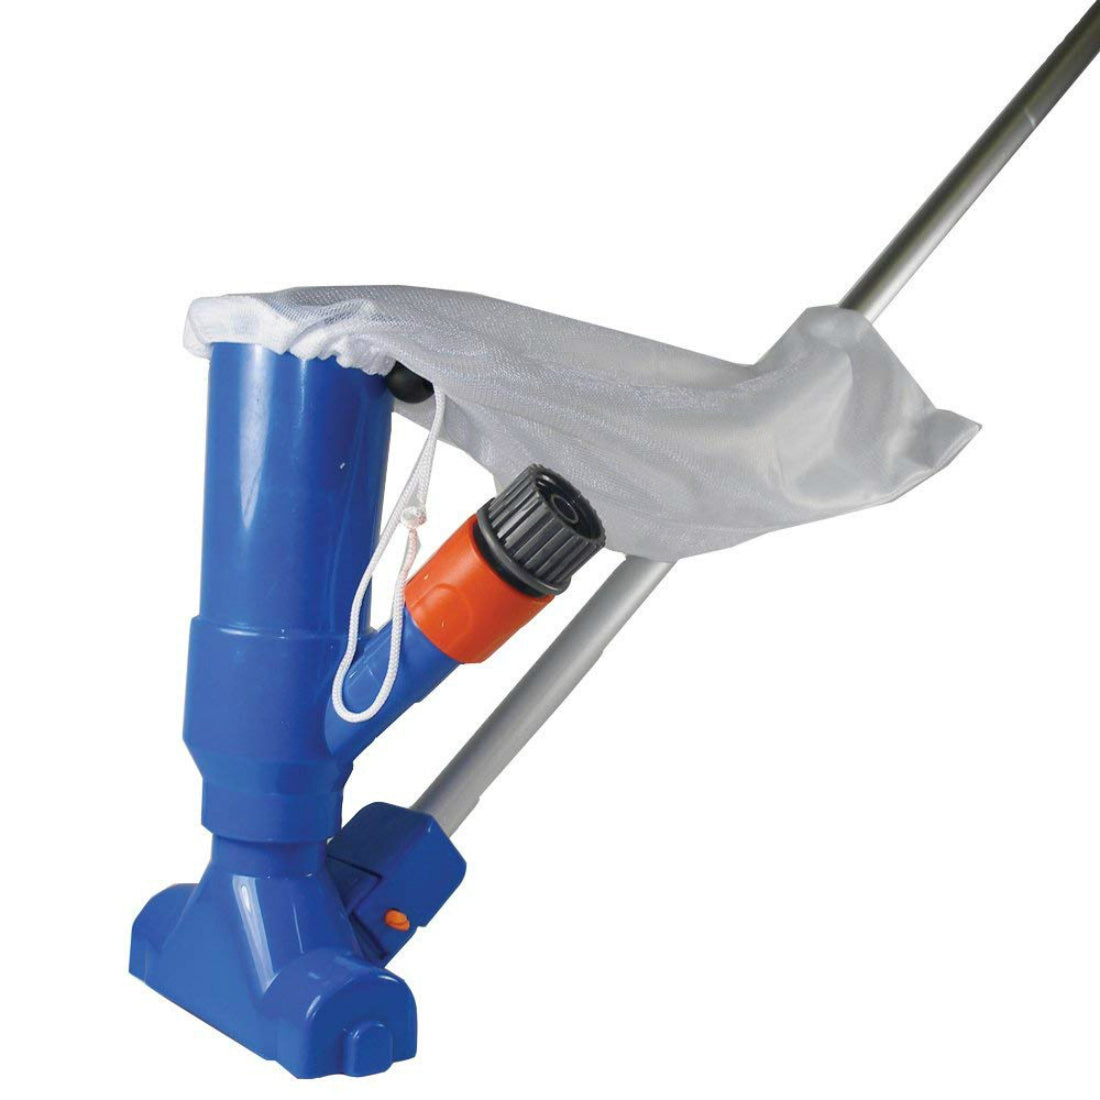 JED Pool Tools 30-152 Splasher Pool Venturi Vacuum with 6' Pole